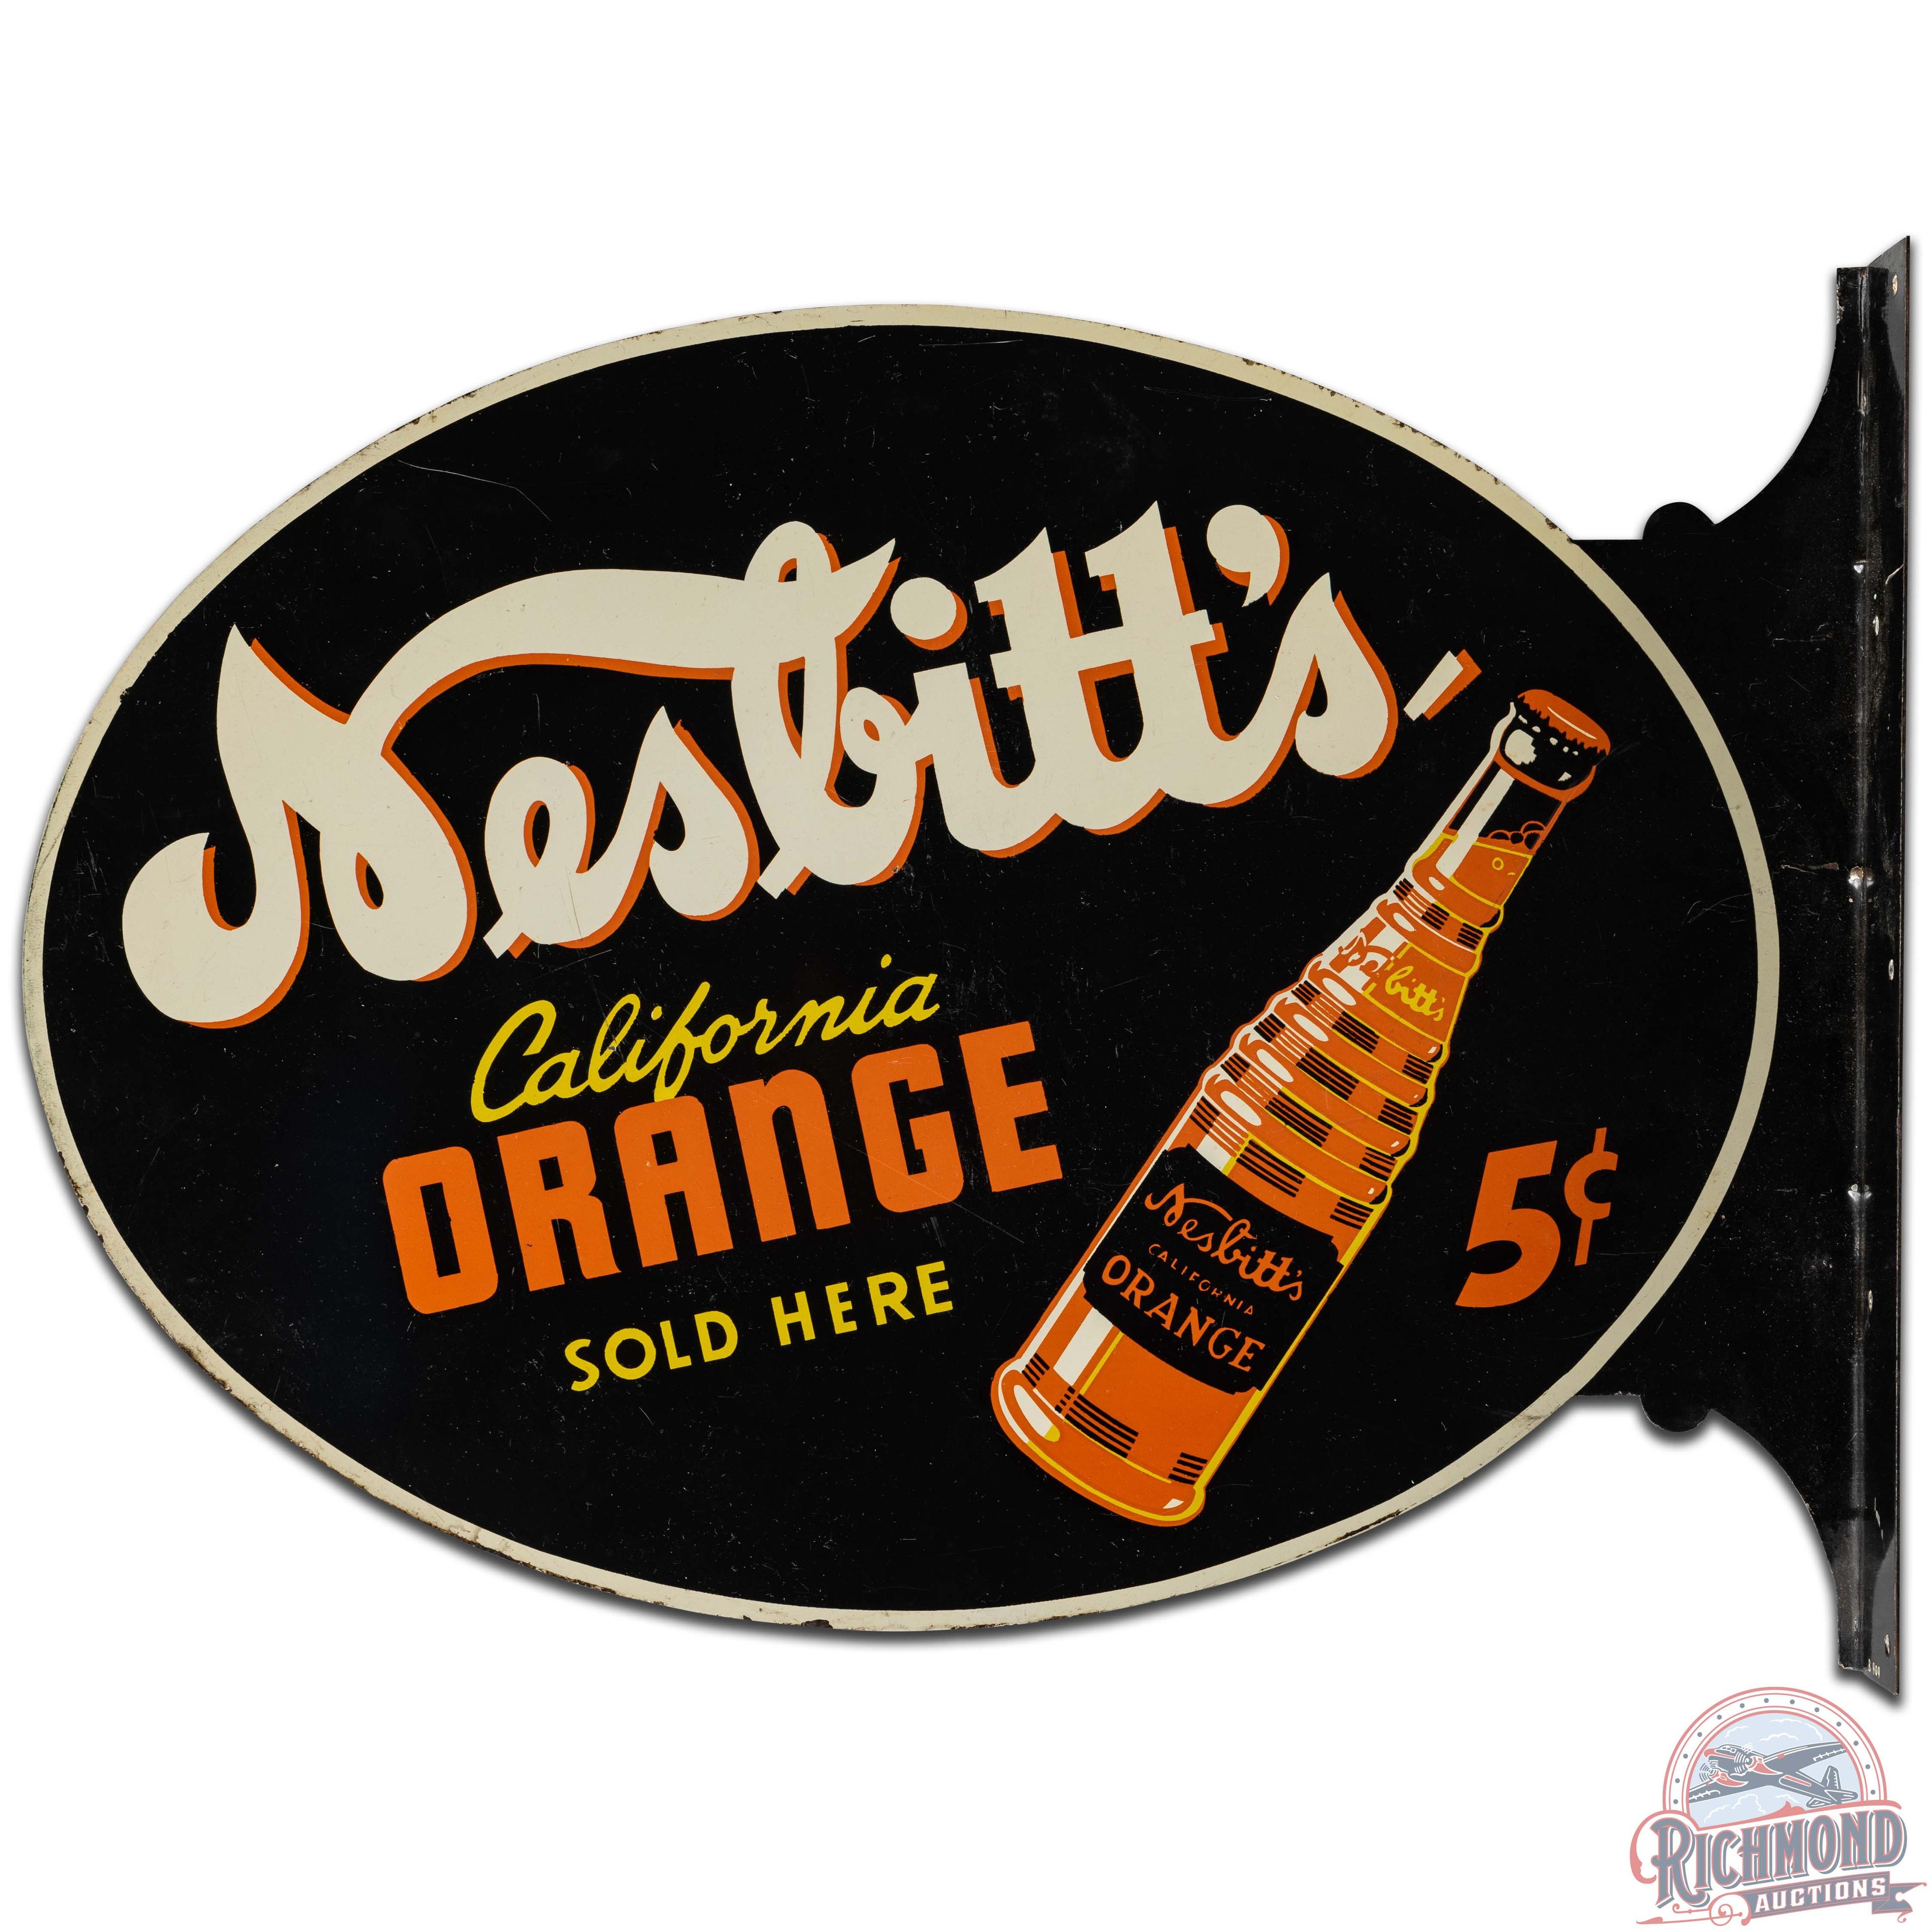 Nesbitt's California Orange Sold Here 5 Cents DS Tin Flange Sign w/ Bottle